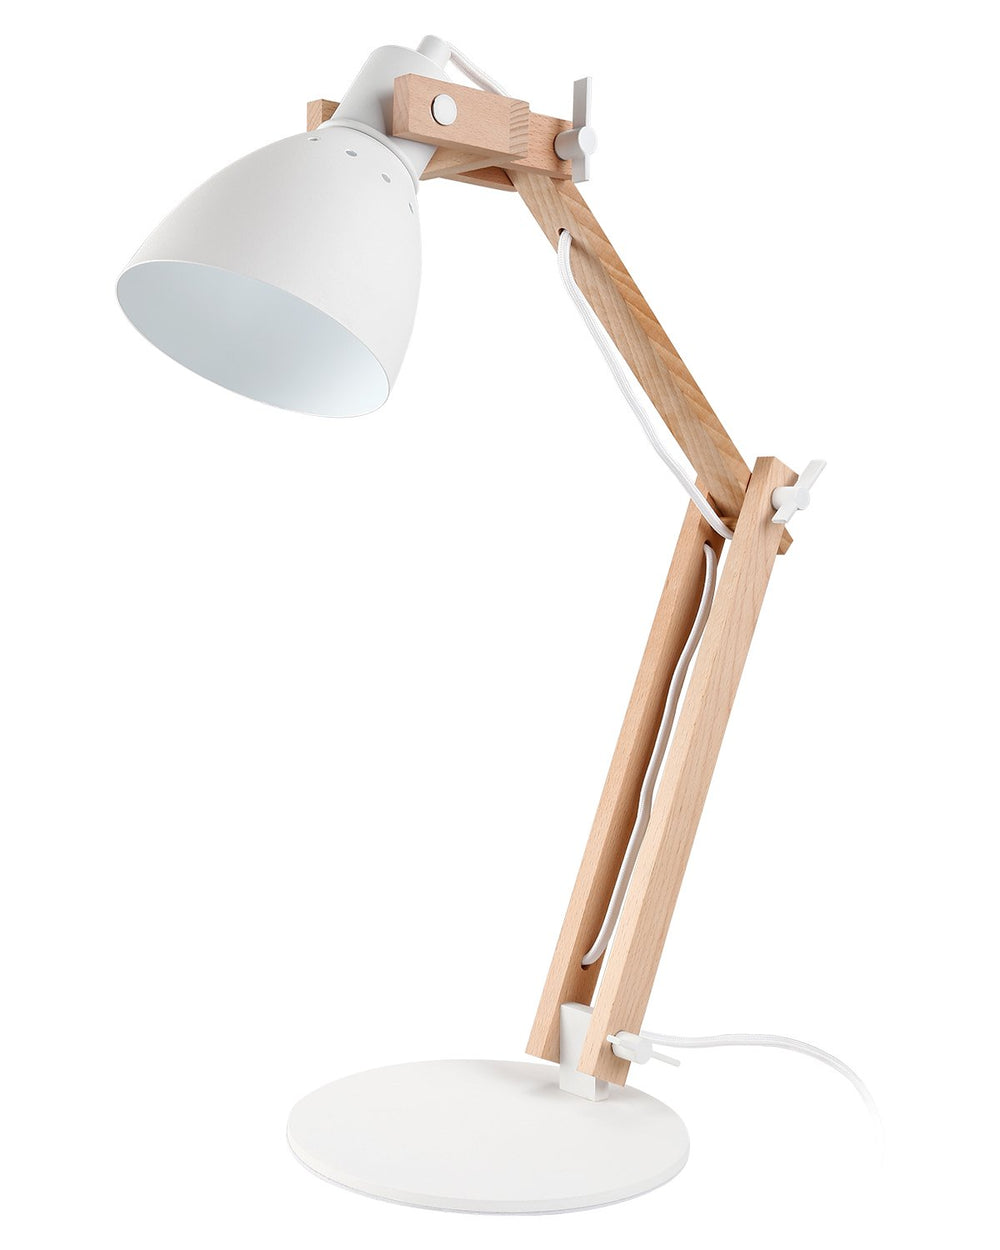 TimberFlex Walnut LED Swing Arm Desk Lamp - 5W Intergrated LED - Walnut & Matt White